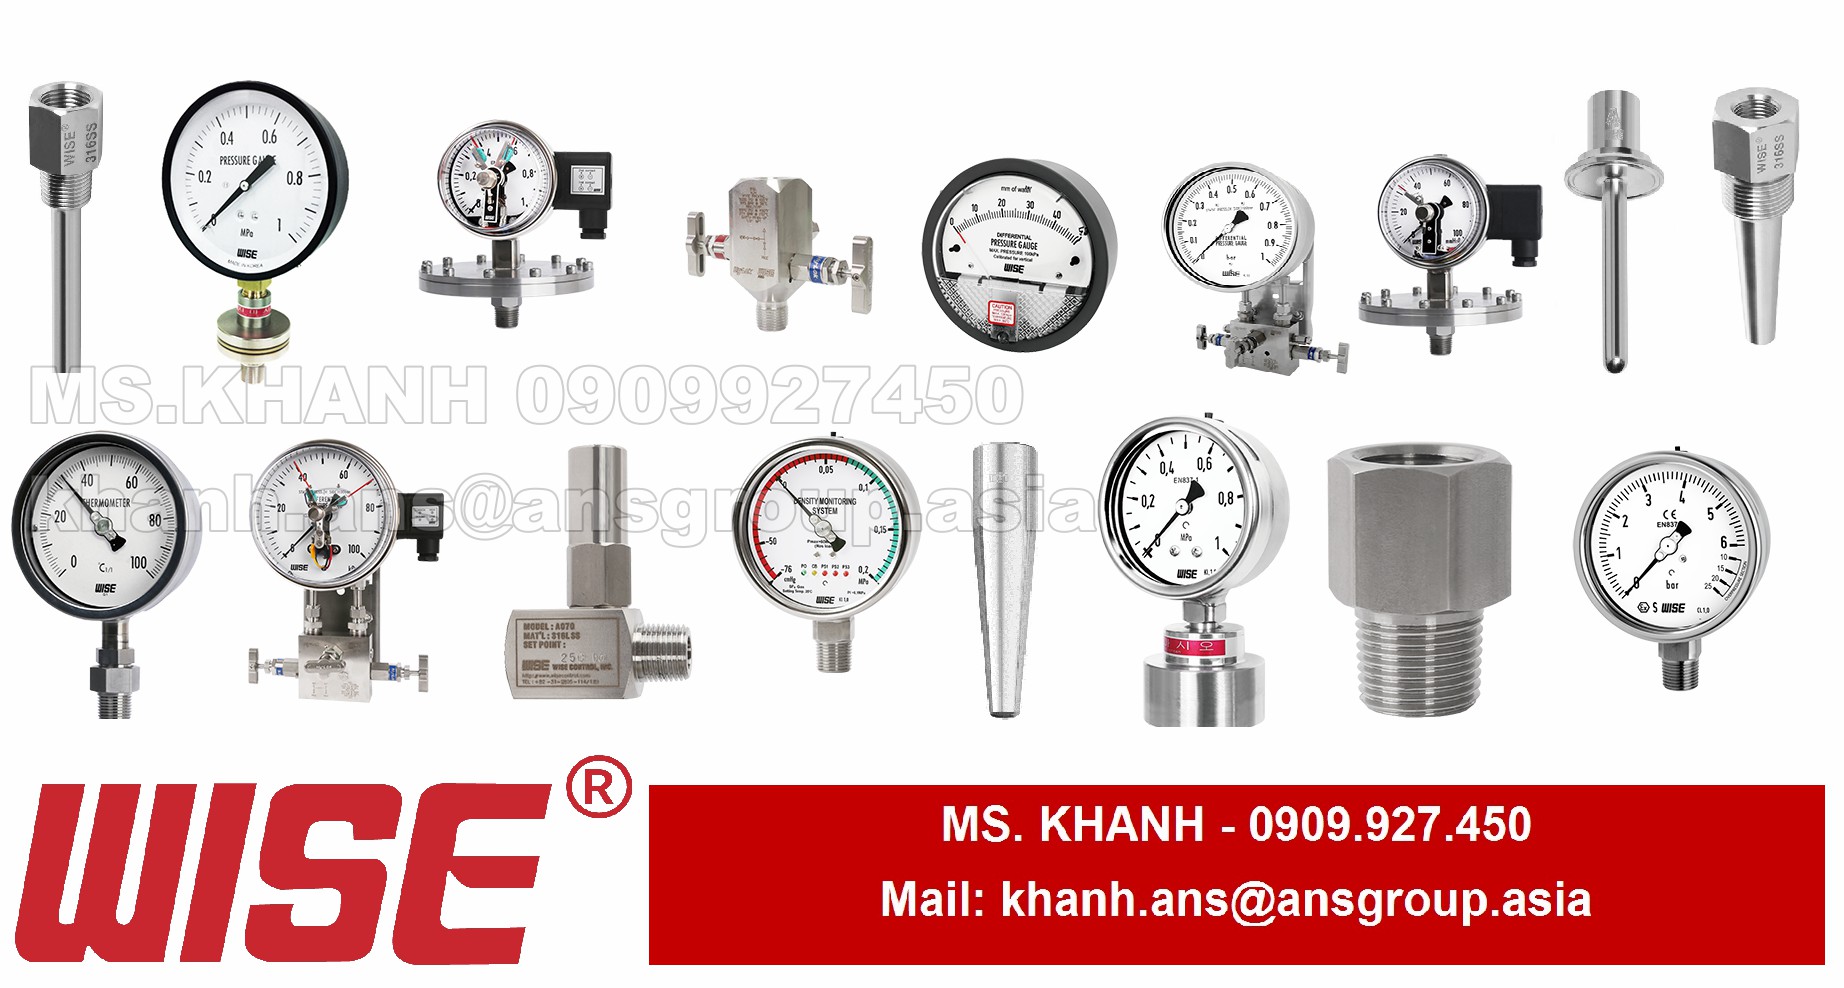 dong-ho-ap-suat-p2526a3ech04730-p252-industrial-pressure-gauge-wise-control-vietnam-1.png